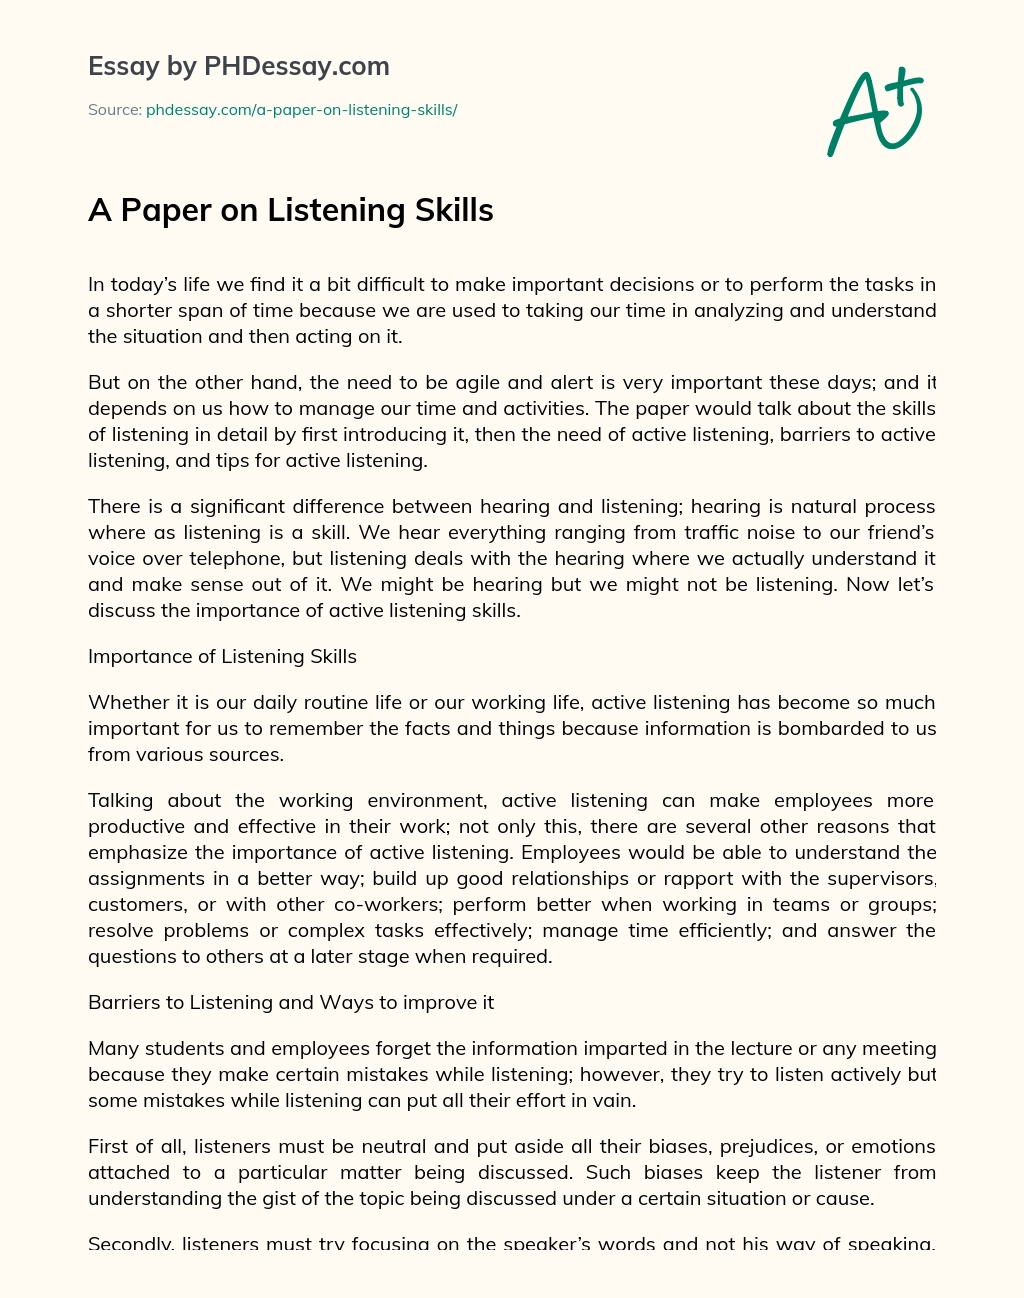 A Paper on Listening Skills essay